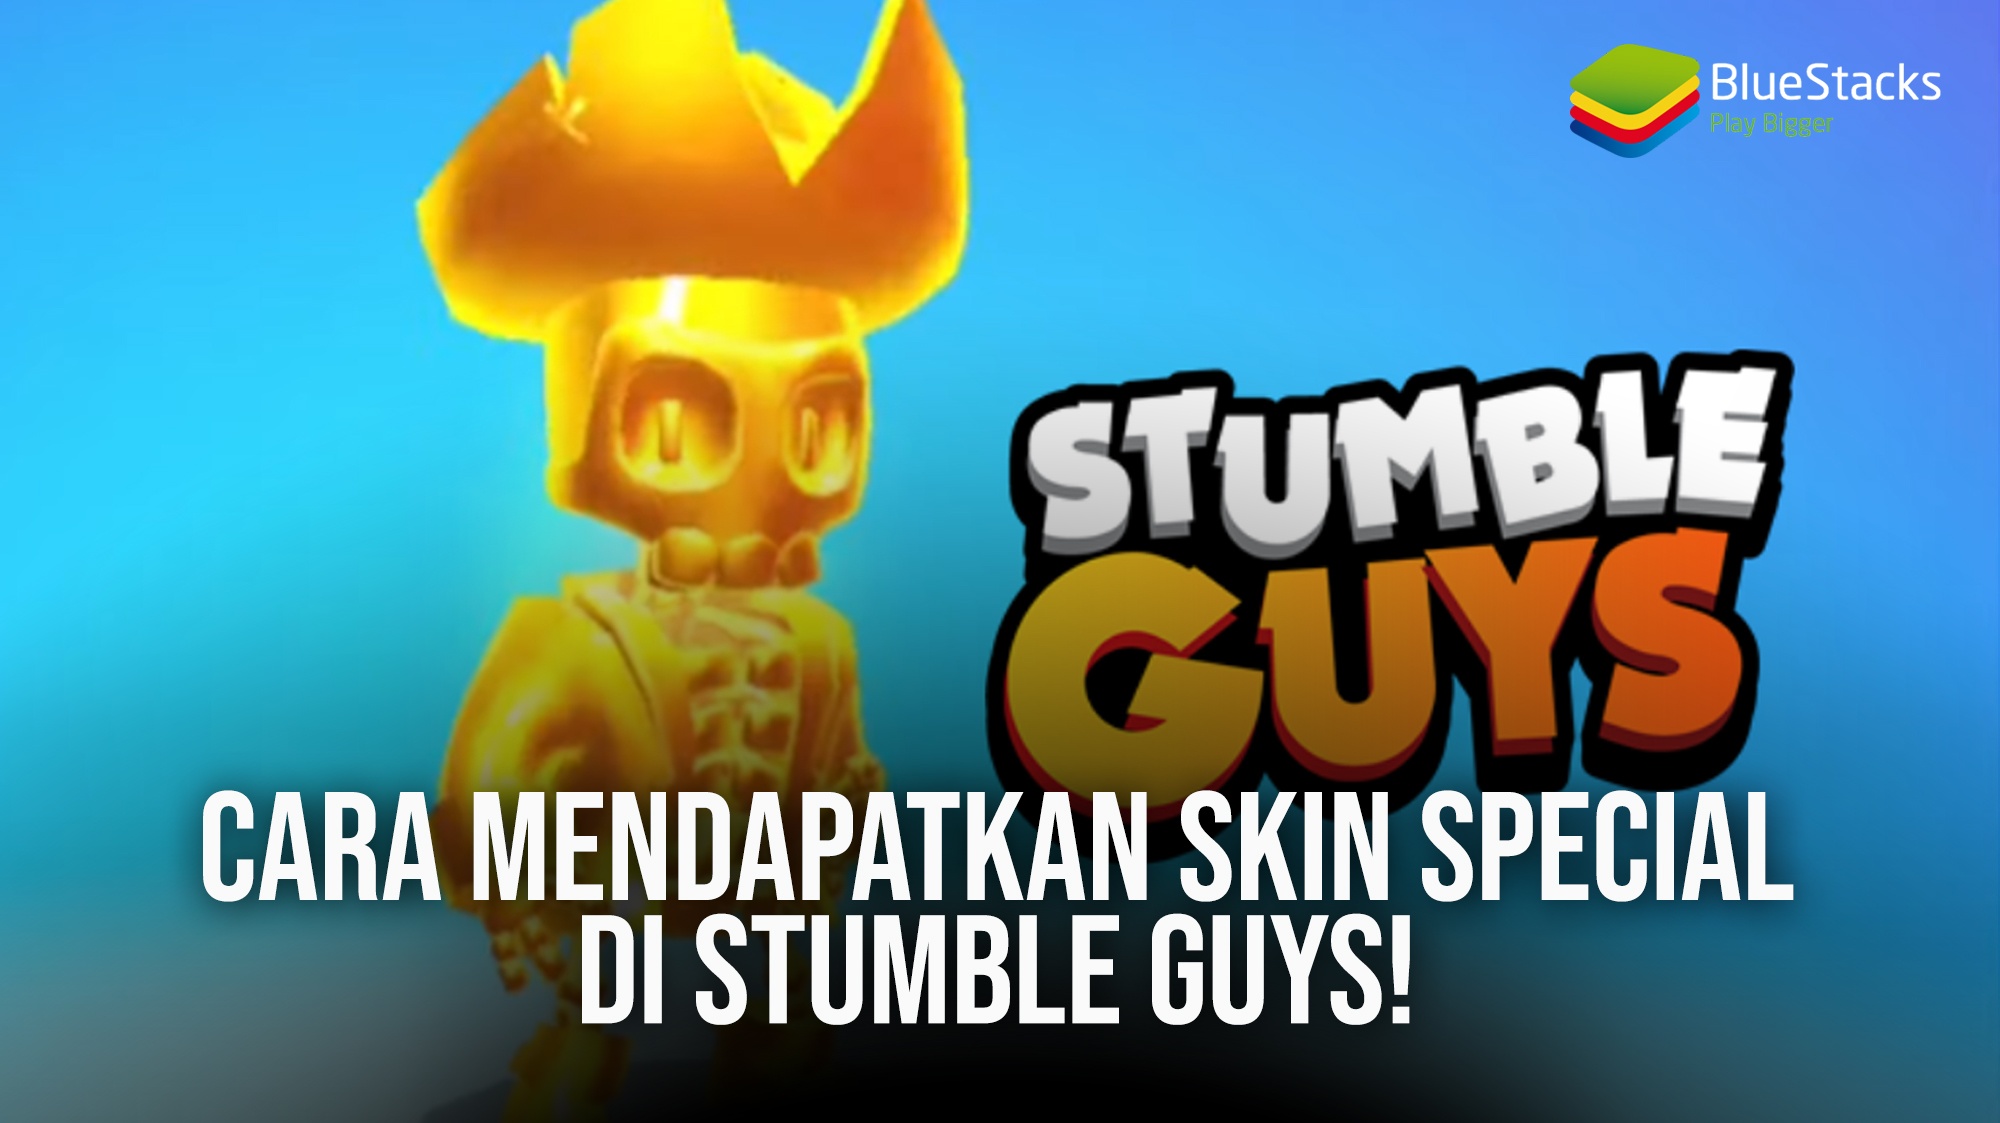 Cara Mudah Mendapatkan Stumble Guys Skin Special Terbaru Gratis